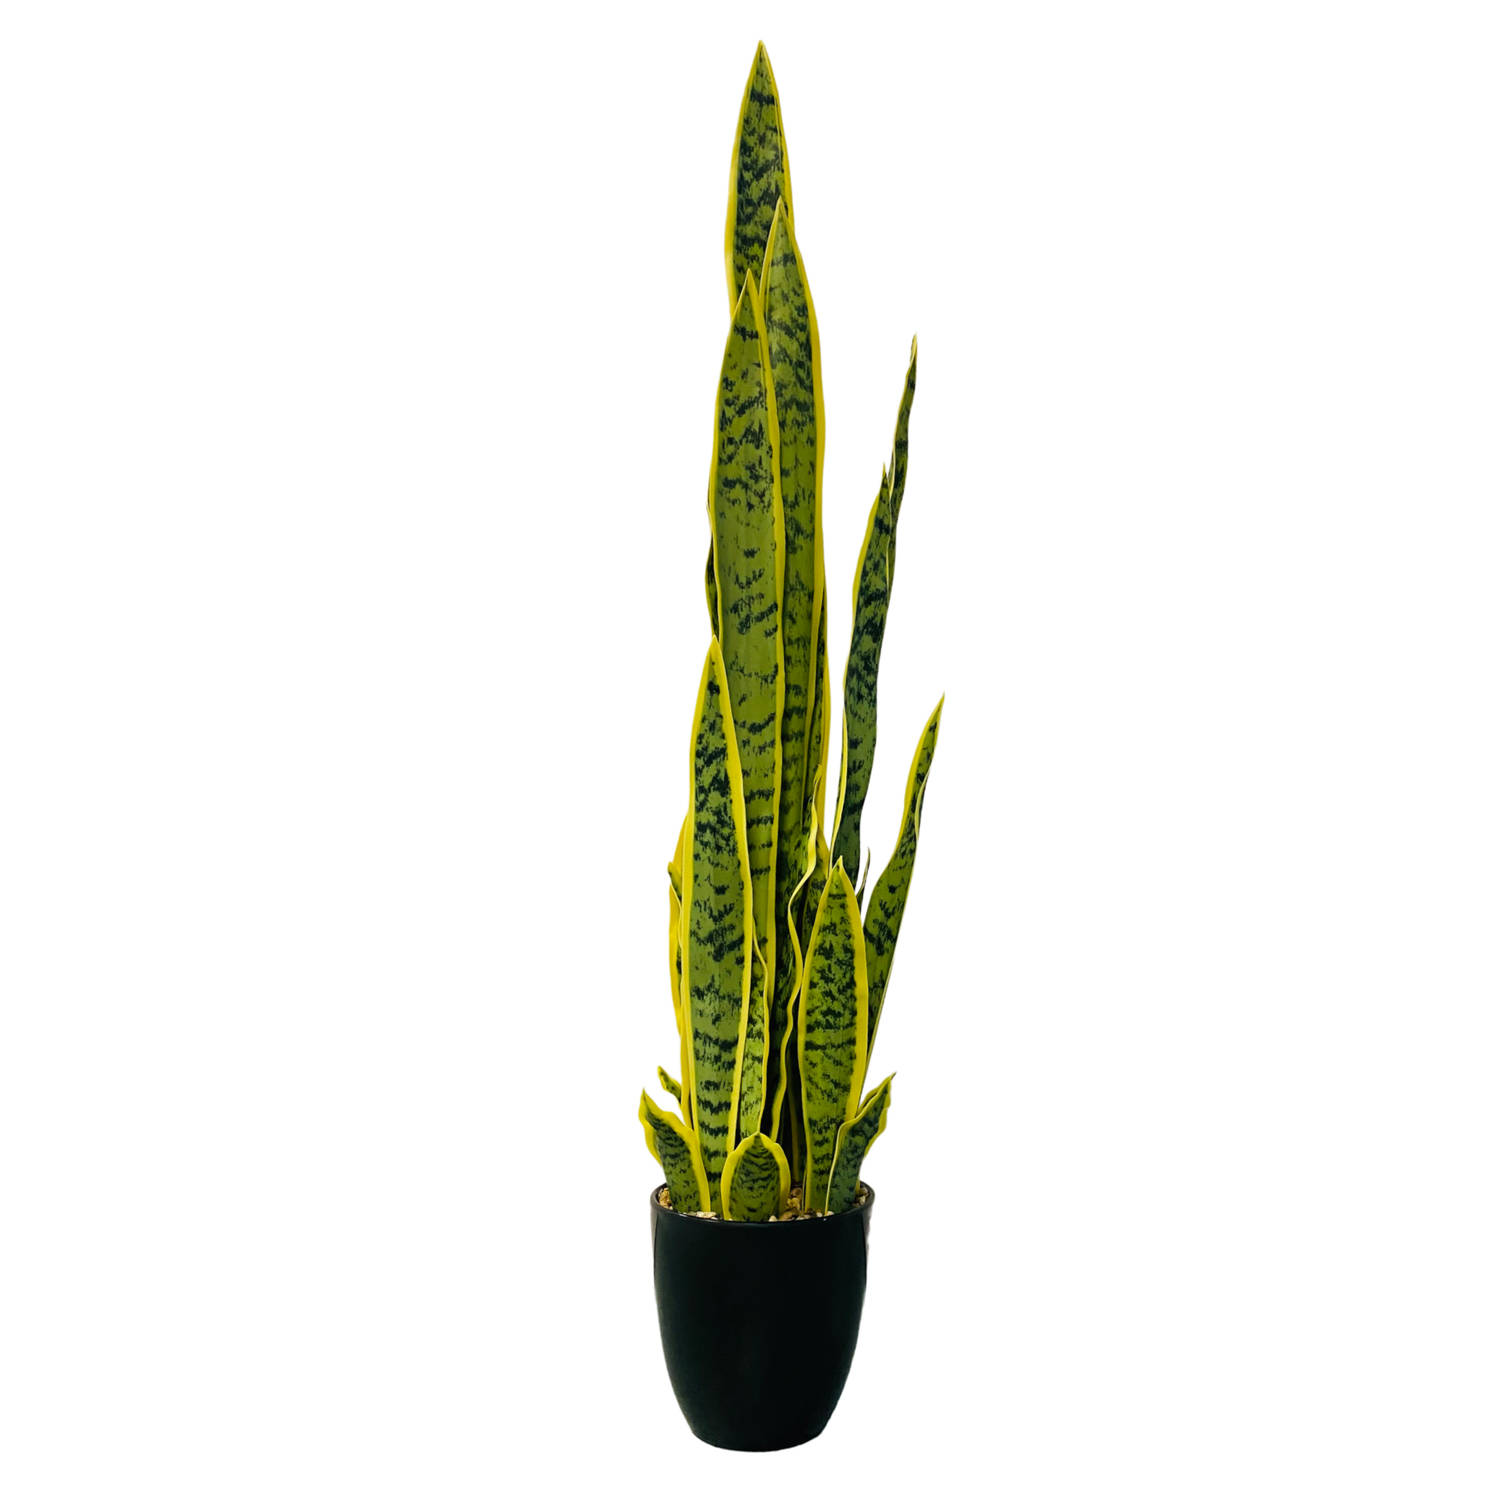 HEM Sanseviera / Vrouwentong Kunstplant - Levensechte Kunstplant voor binnen - in pot - groen / geel 92 cm